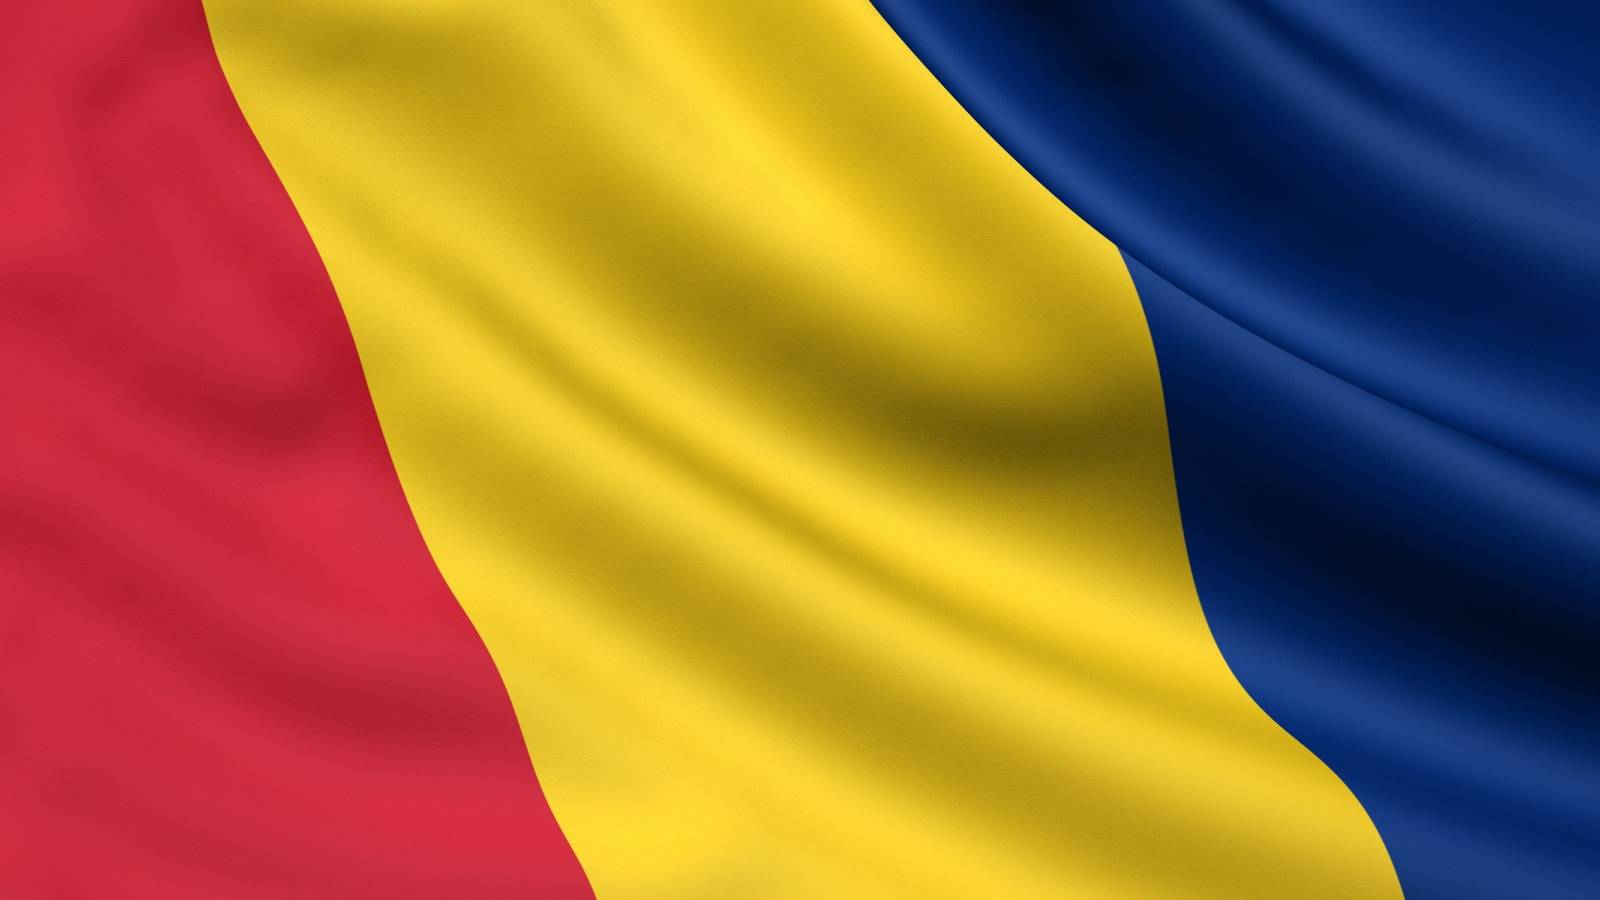 Romania Permite Vaccinarea Doza Booster 4 Luni Schema Completa